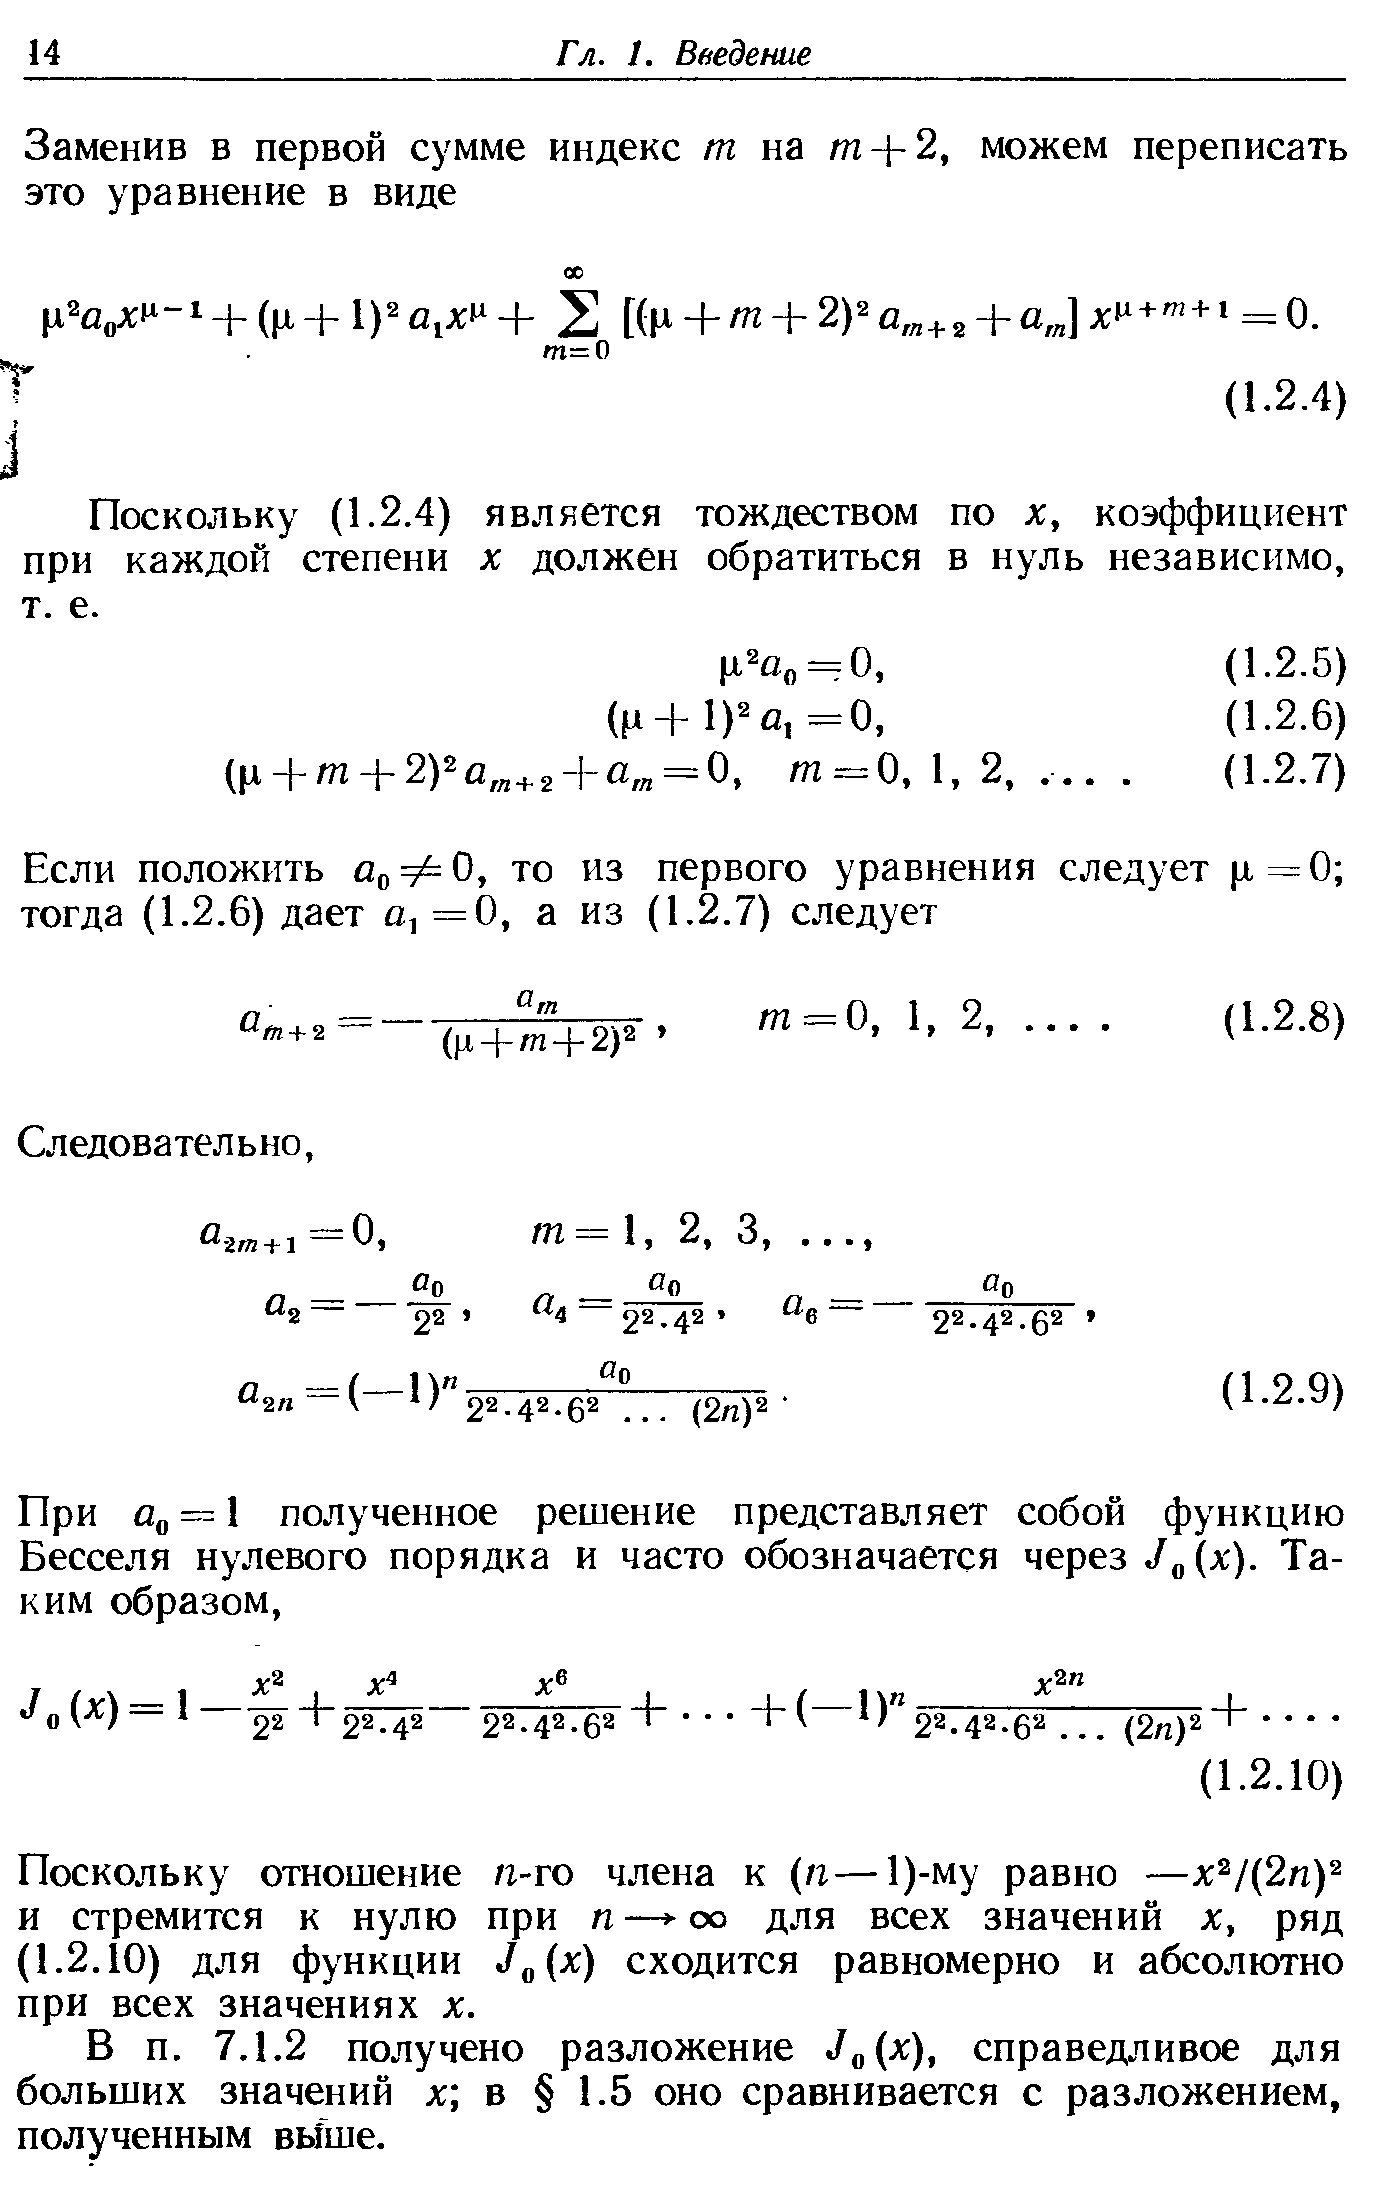 Поскольку (1.2.4) является тождеством по х, коэффициент при каждой степени х должен обратиться в нуль независимо, т. е.
